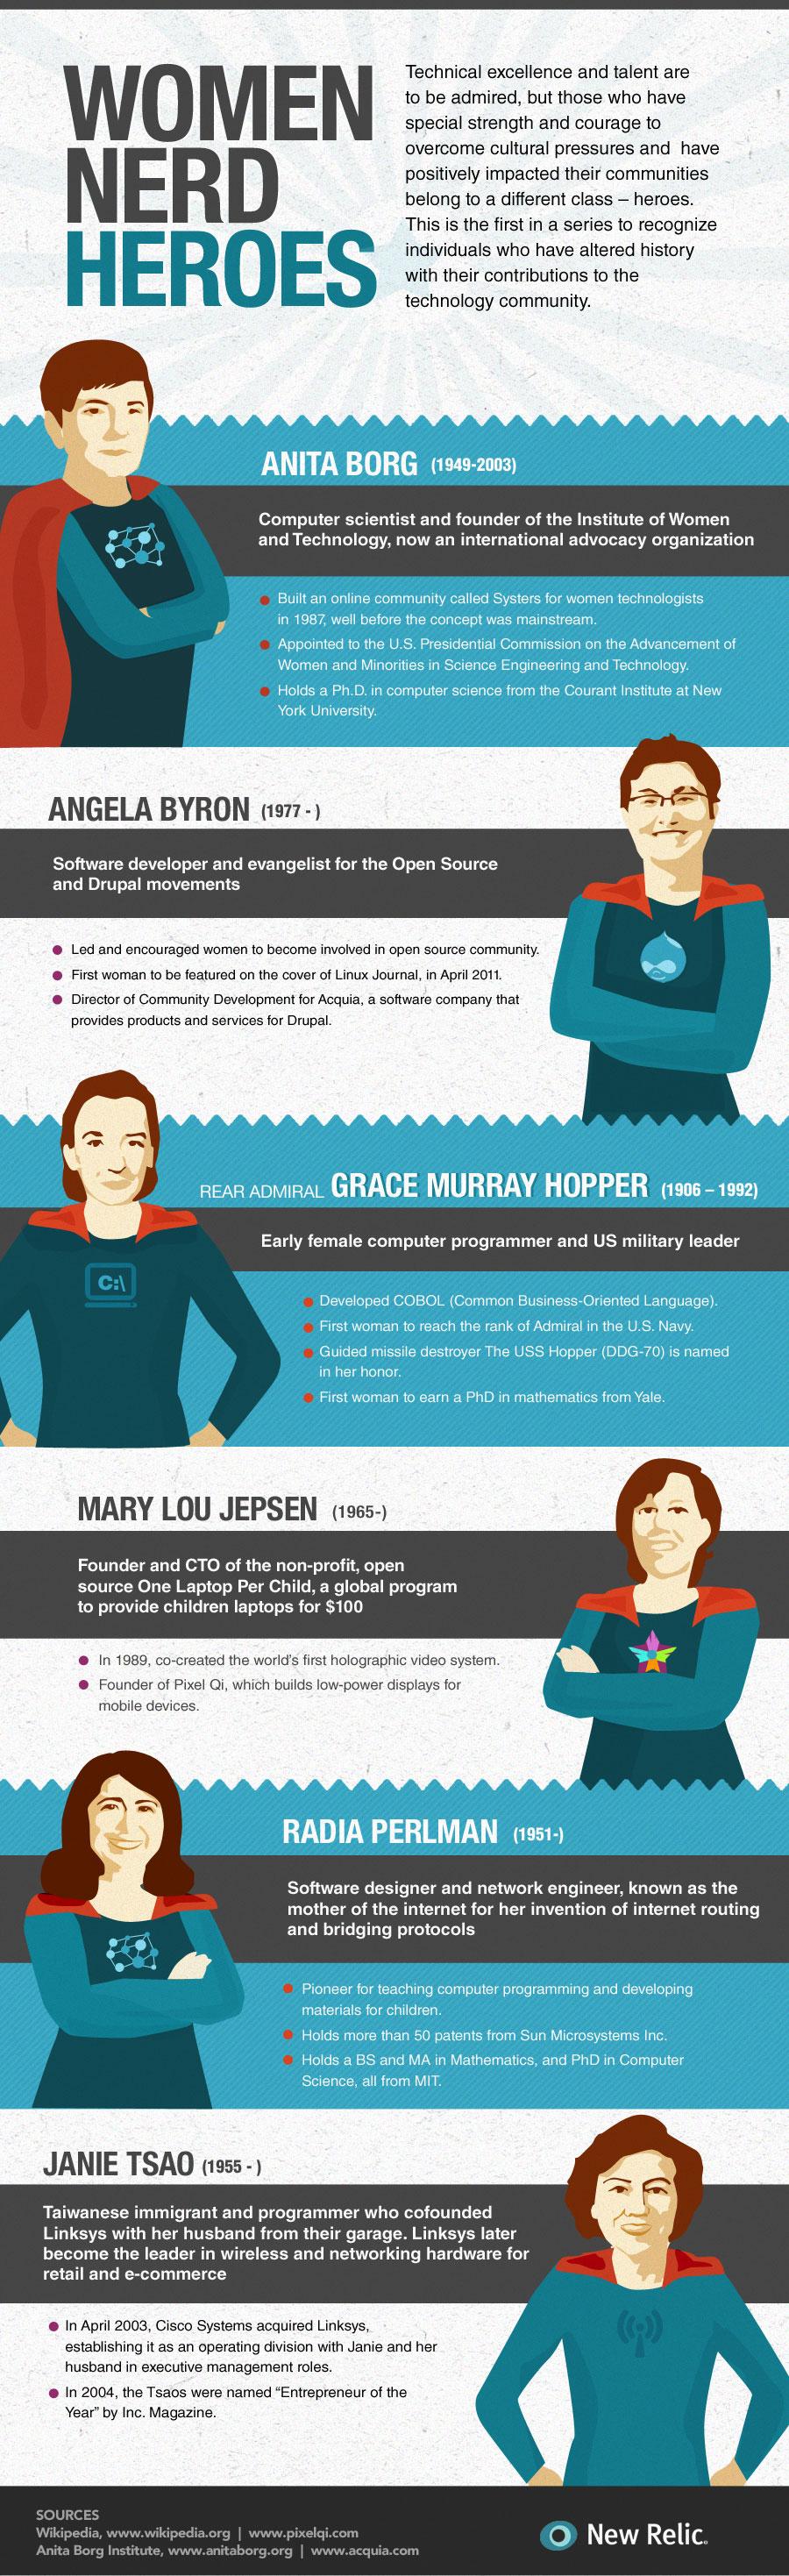 Infographic - Women Nerd Heroes